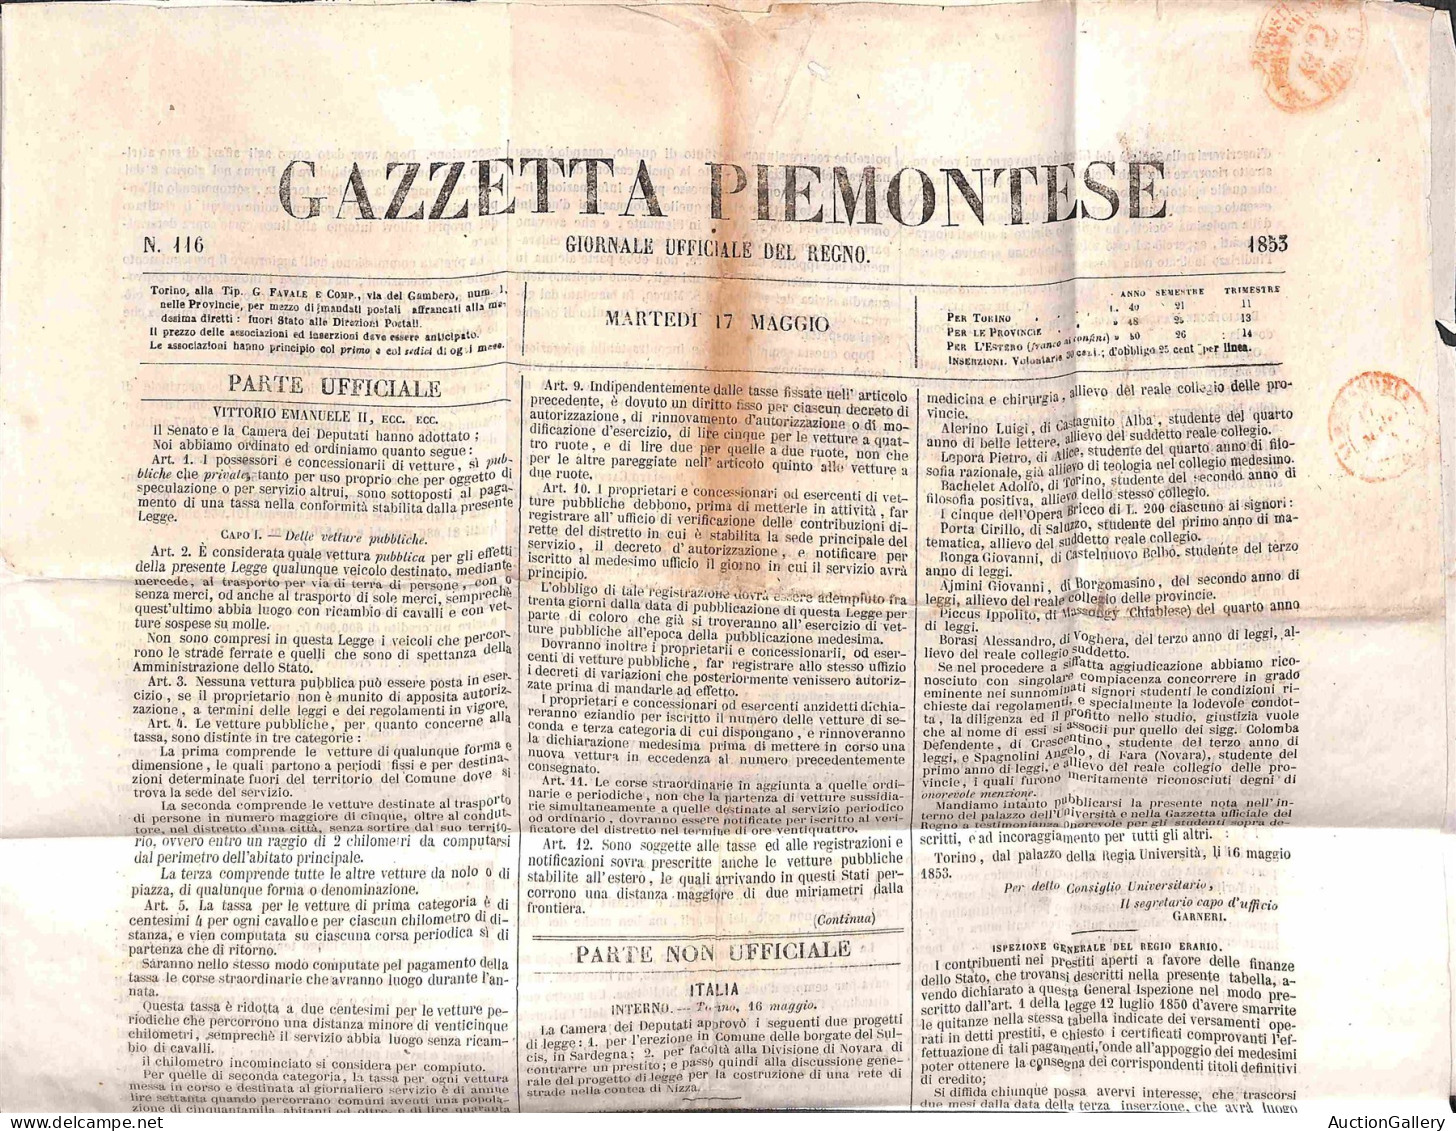 Antichi Stati Italiani - Sardegna - Due Decreti sui trasporti (1859 + 1866) + Gazzetta Piemontese del 1853 con itinerari